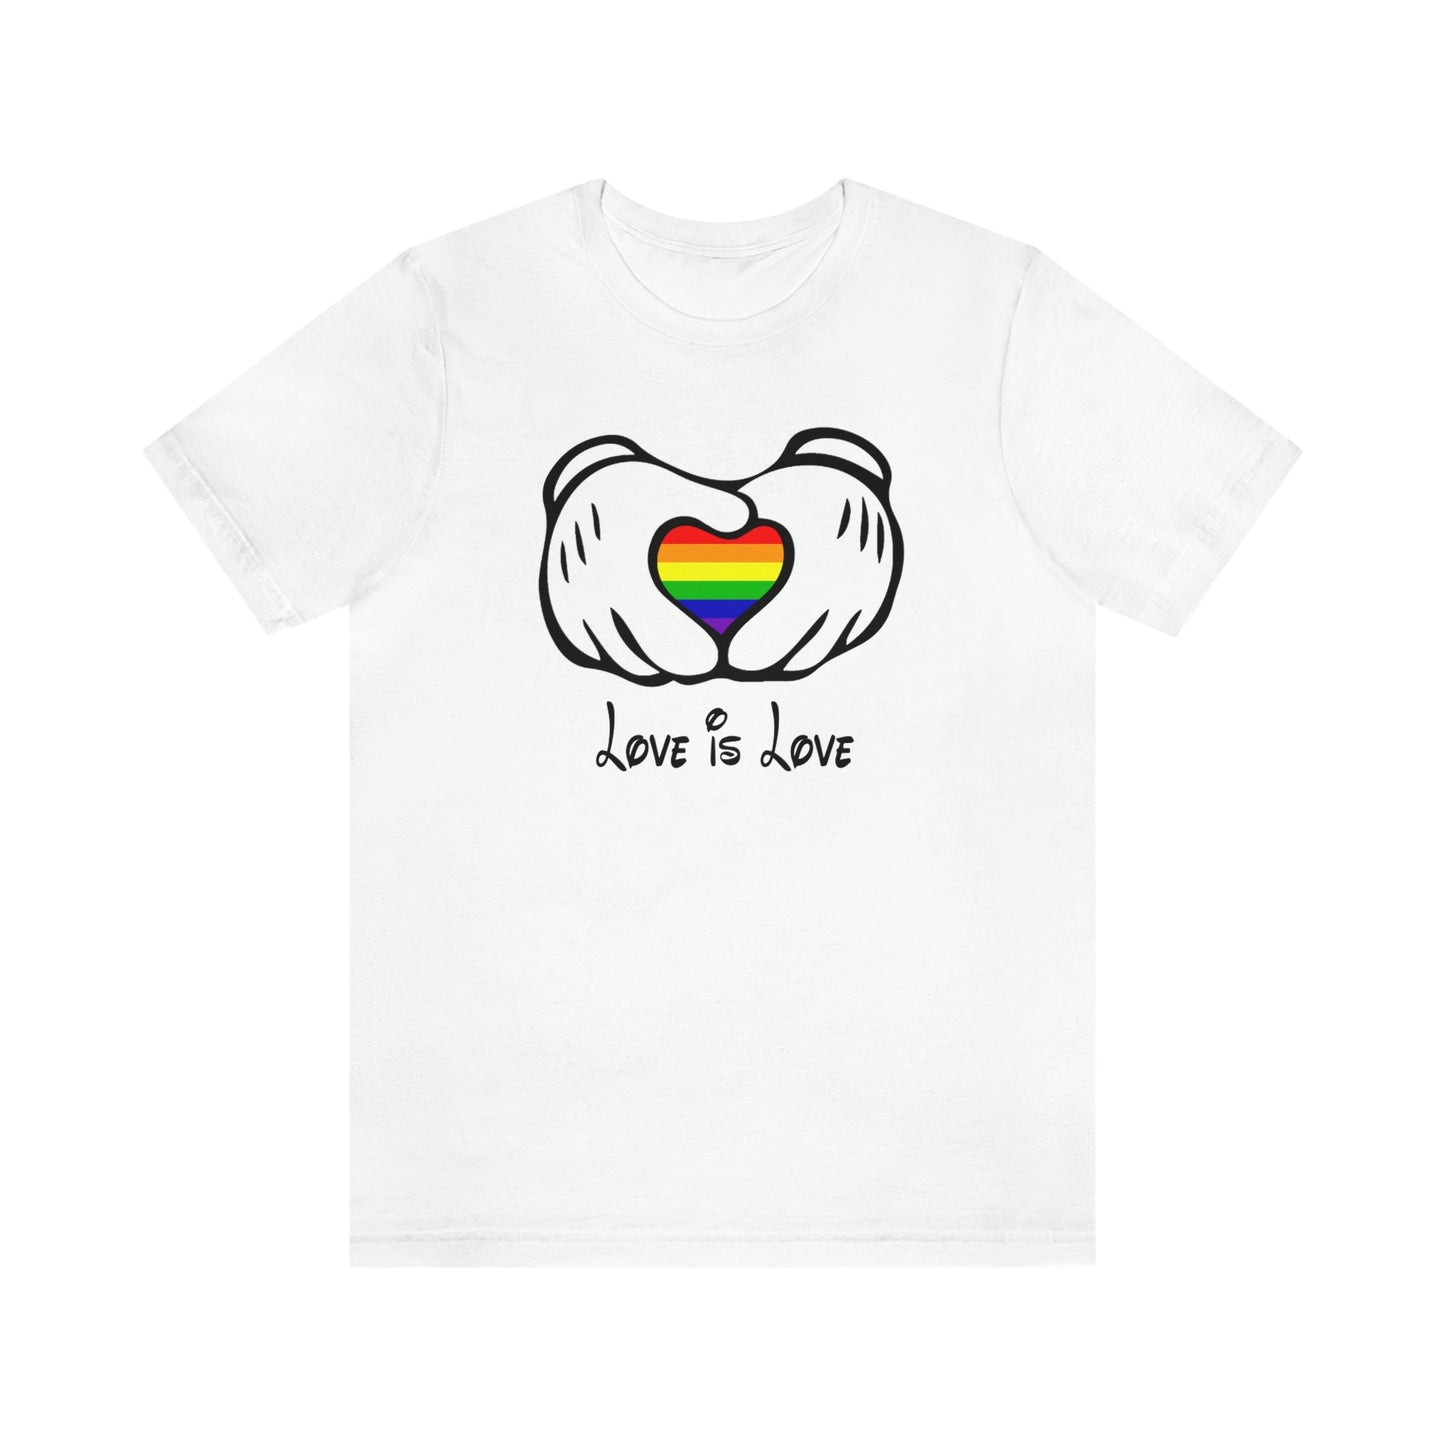 L’amour est l’amour Mains de souris T-shirt unisexe adulte